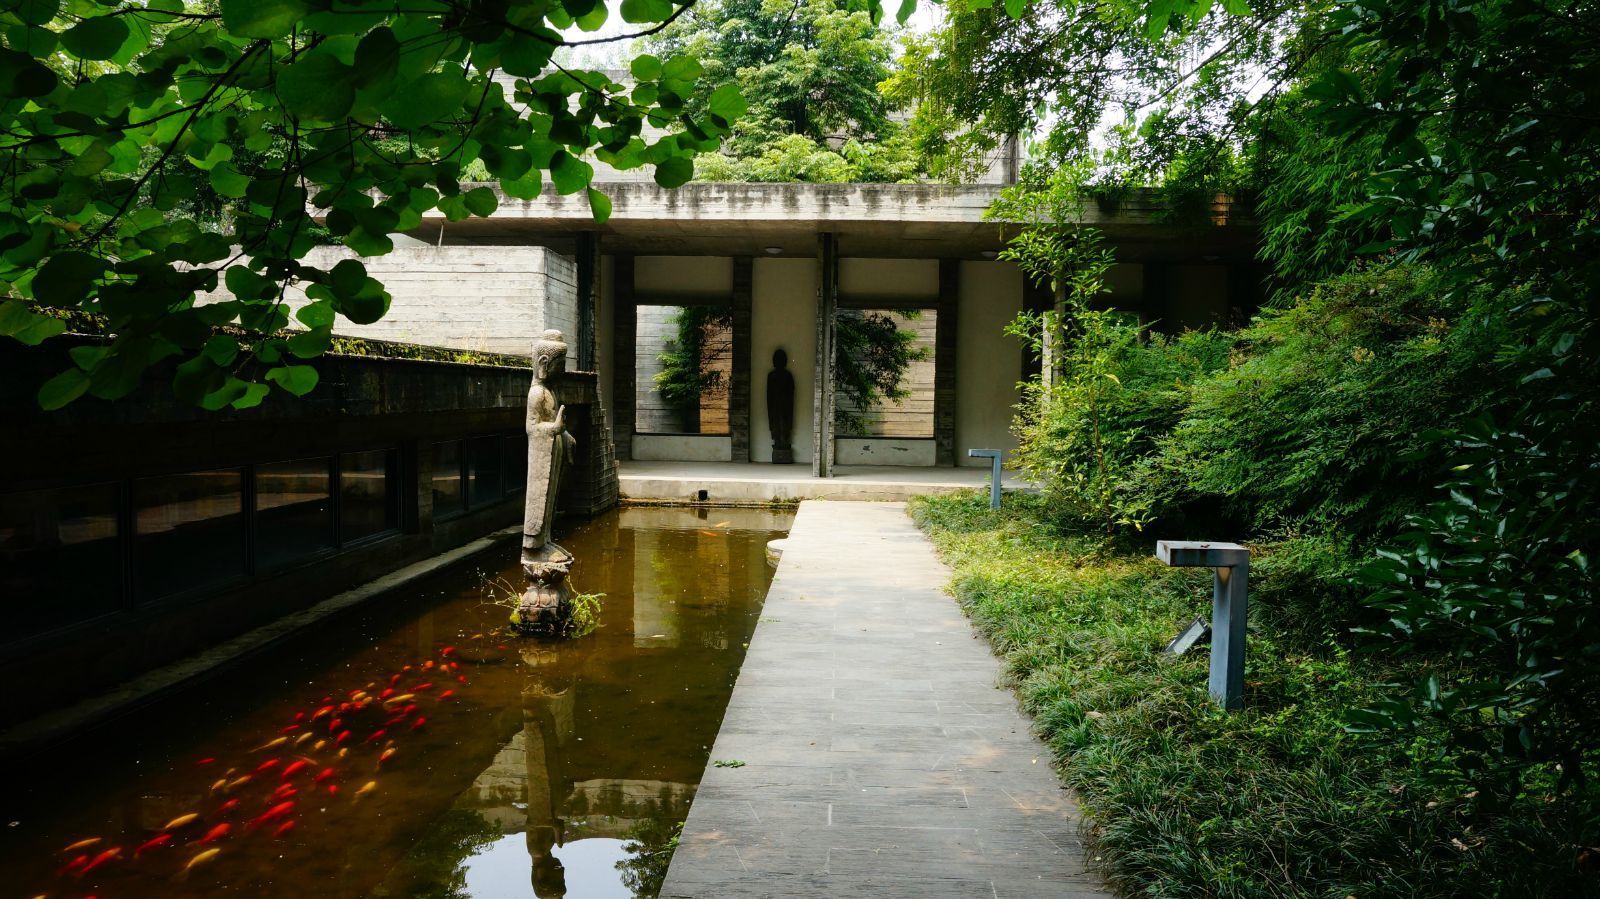 鹿野苑私立石刻艺术博物馆